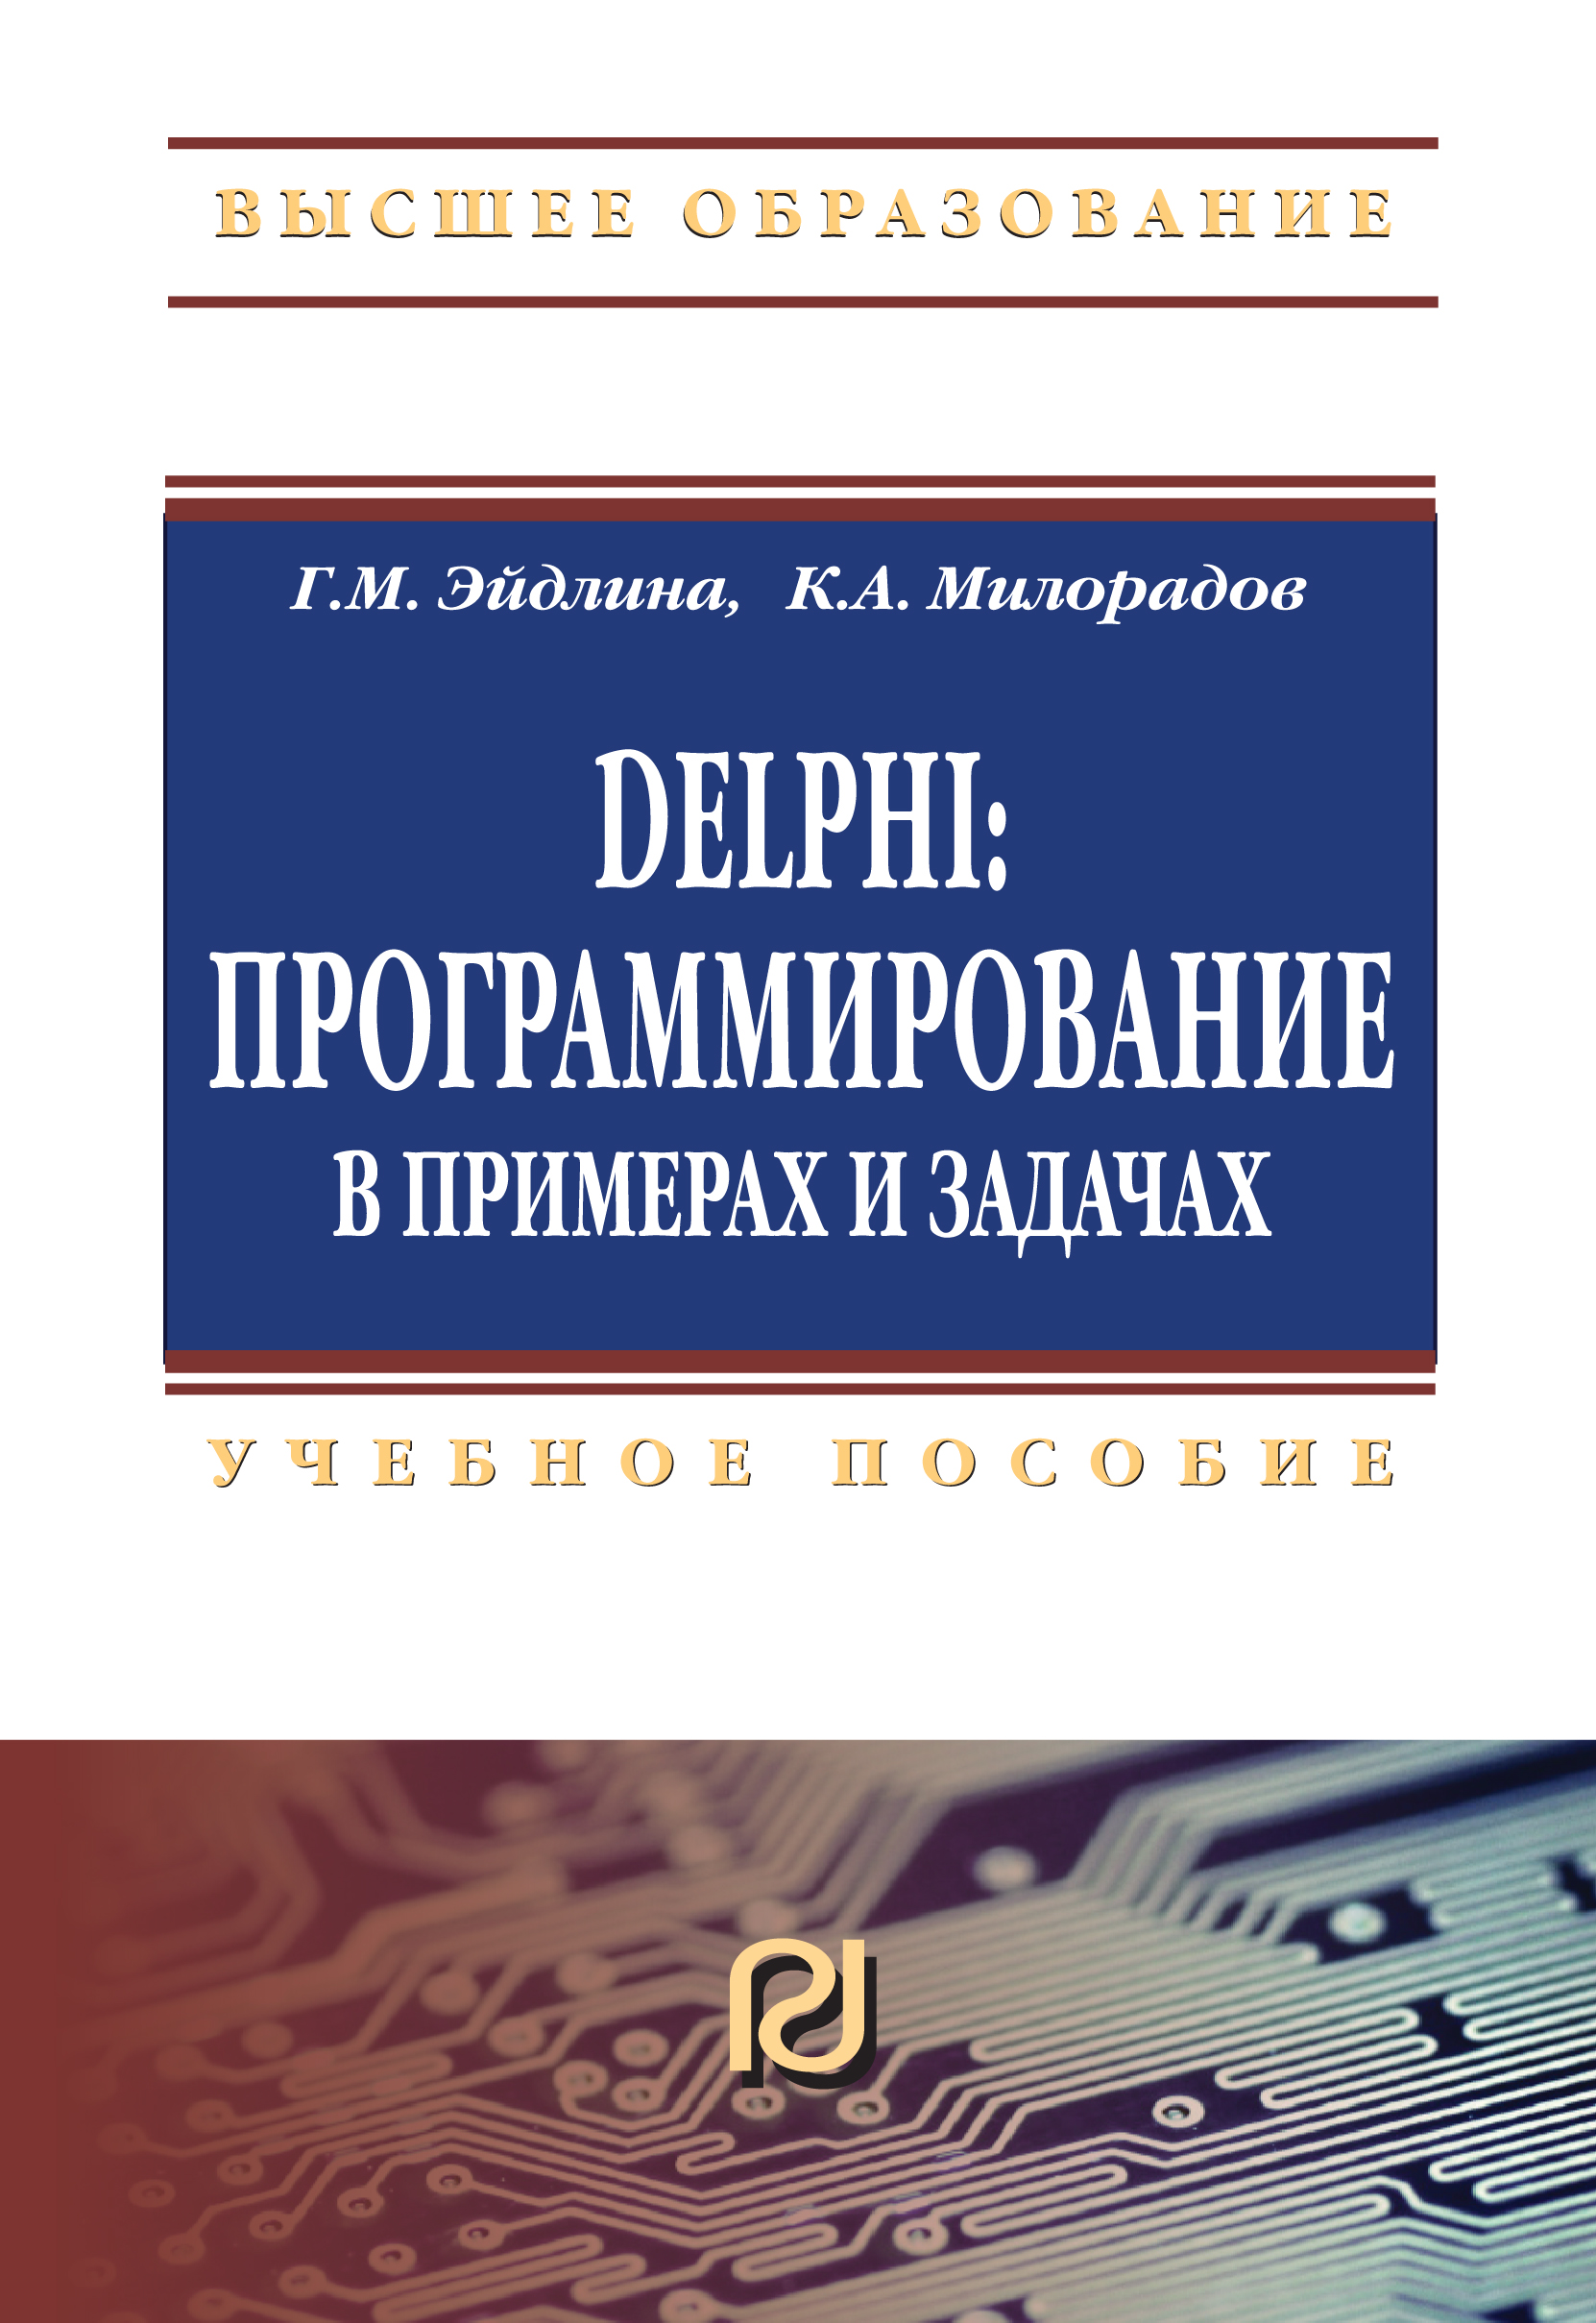             Delphi: программирование в примерах и задачах.Практикум: Второе издание
    